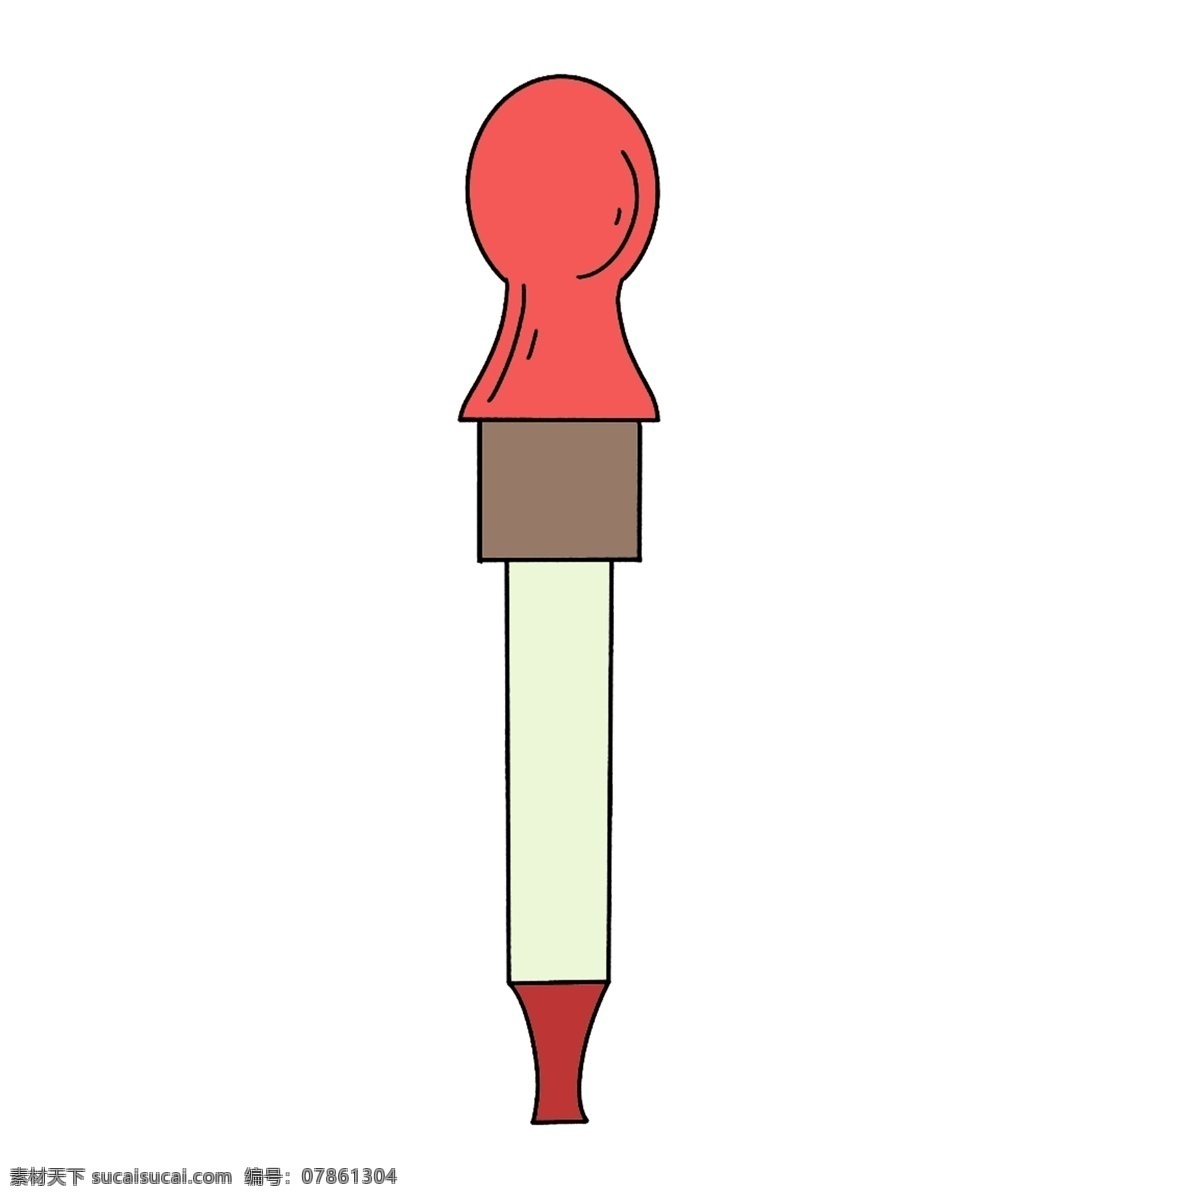 红色 滴管 装饰 插画 红色的滴管 创意滴管 实验滴管 漂亮的滴管 器材滴管 化学滴管